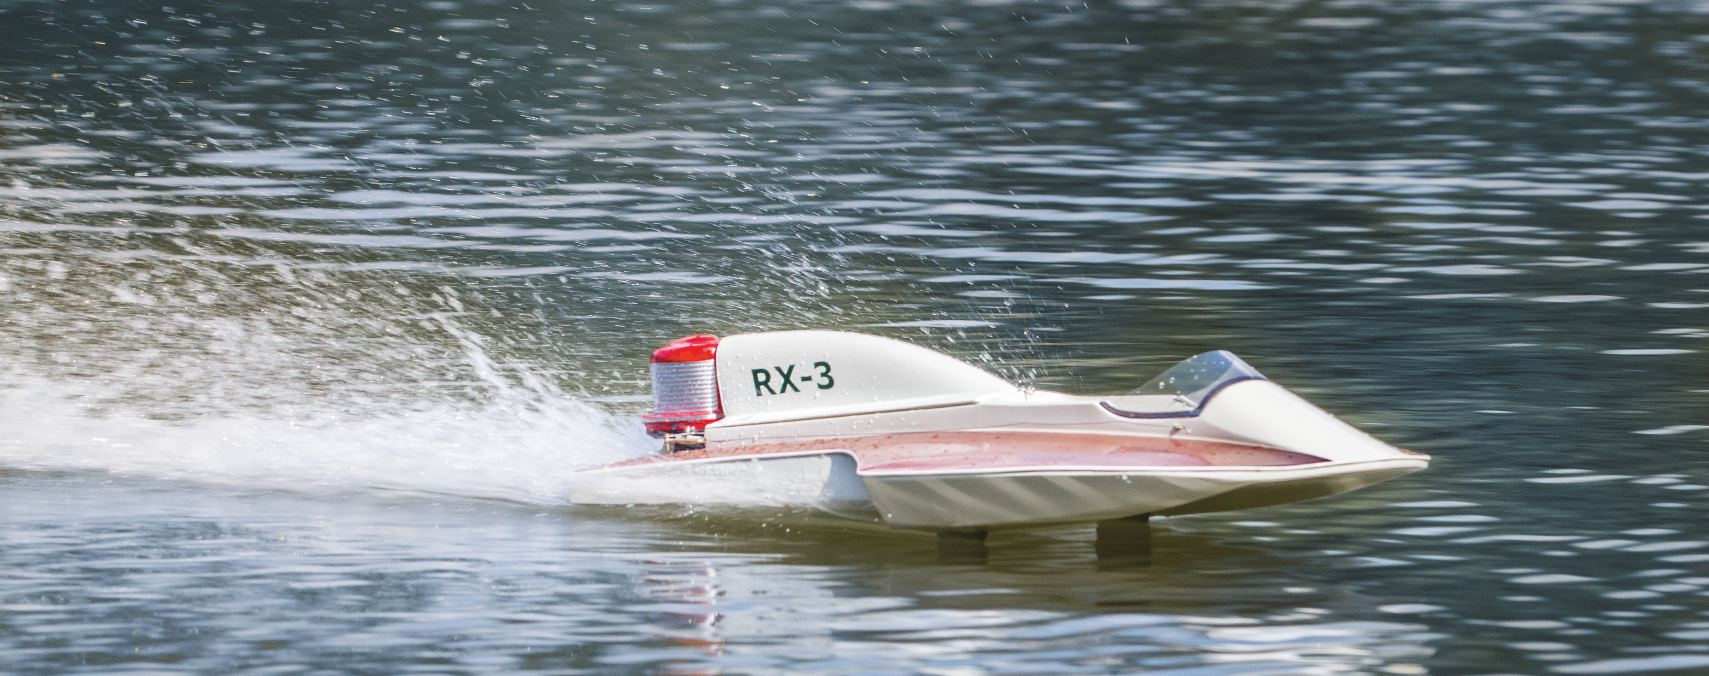 Herzlichen Glückwunsch zum Erwerb des Rennboots RX-3 von aero-naut. Das Modell ist bereits fertig gebaut und muss nur noch durch Einbau der RC-Anlage fahrbereit gemacht werden.